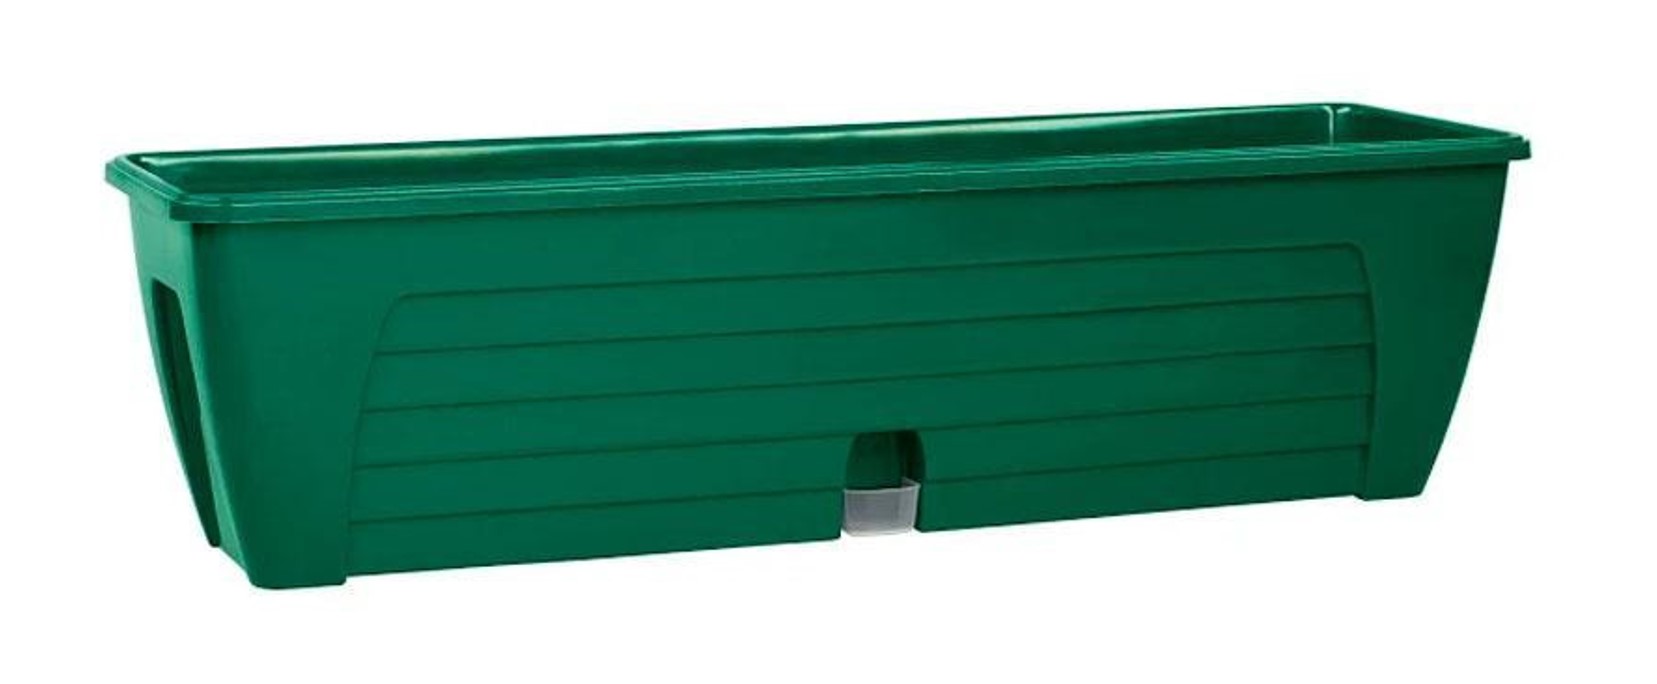 фото Ящик балконный зеленый лидо santino